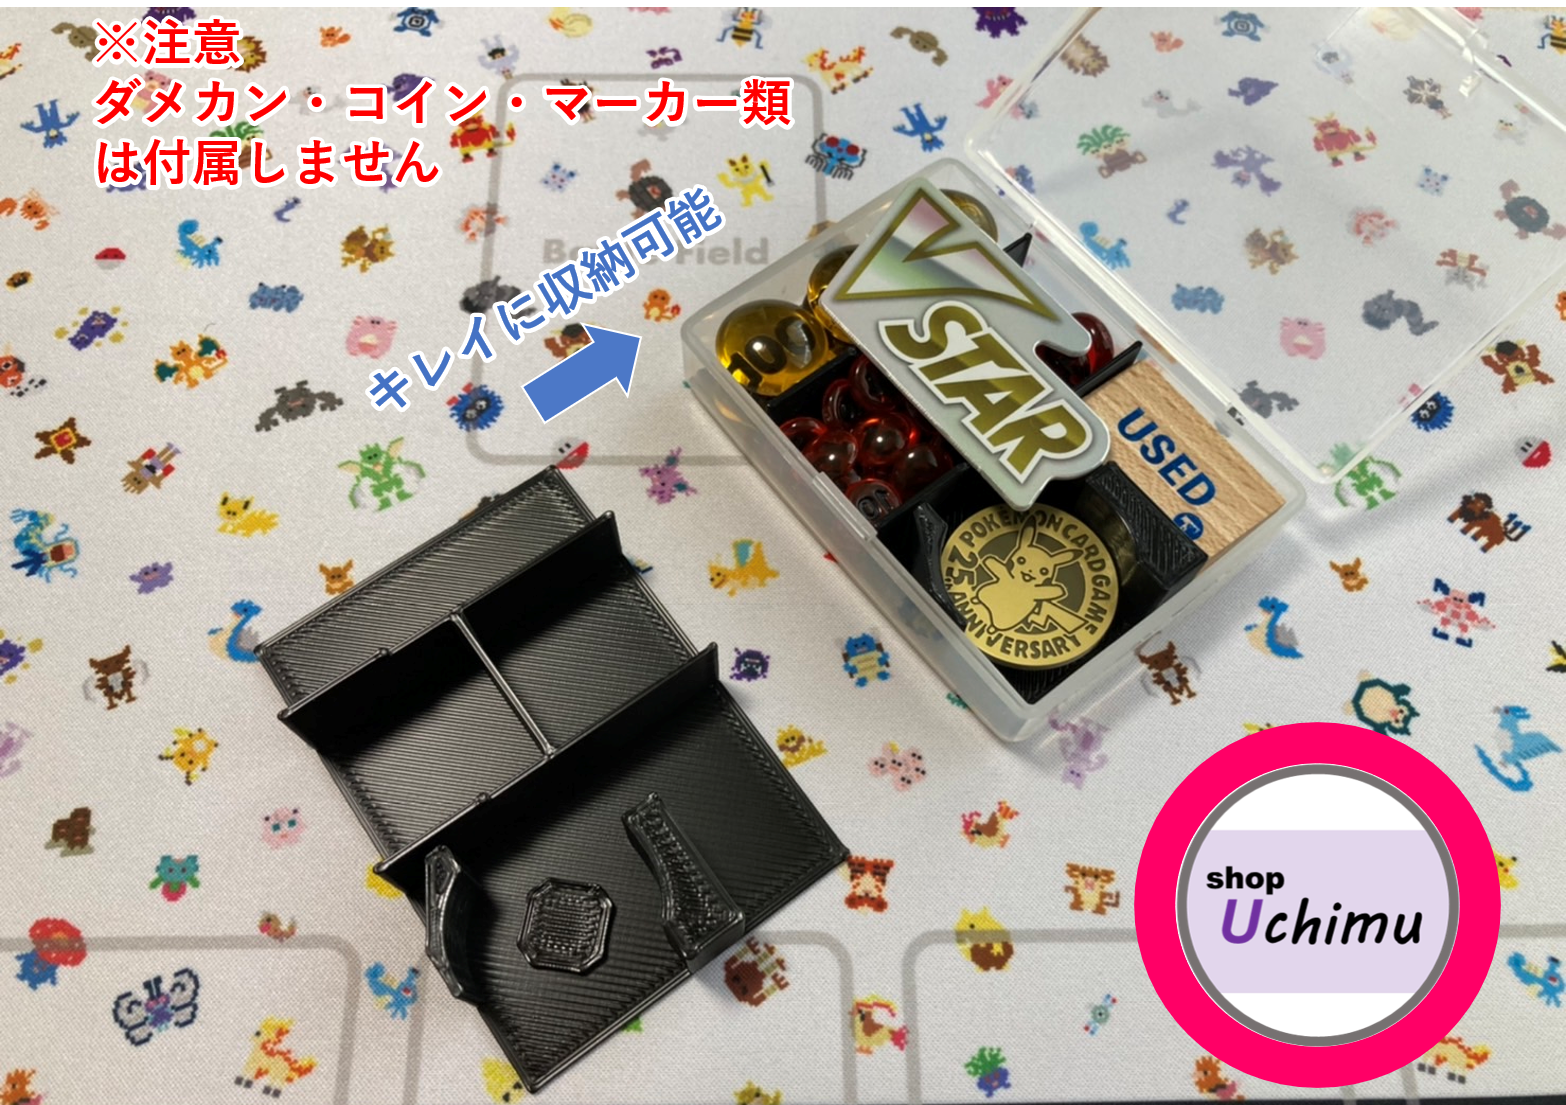 Shop Uchimu　ダメカンケース　仕切り　セット 黒-0